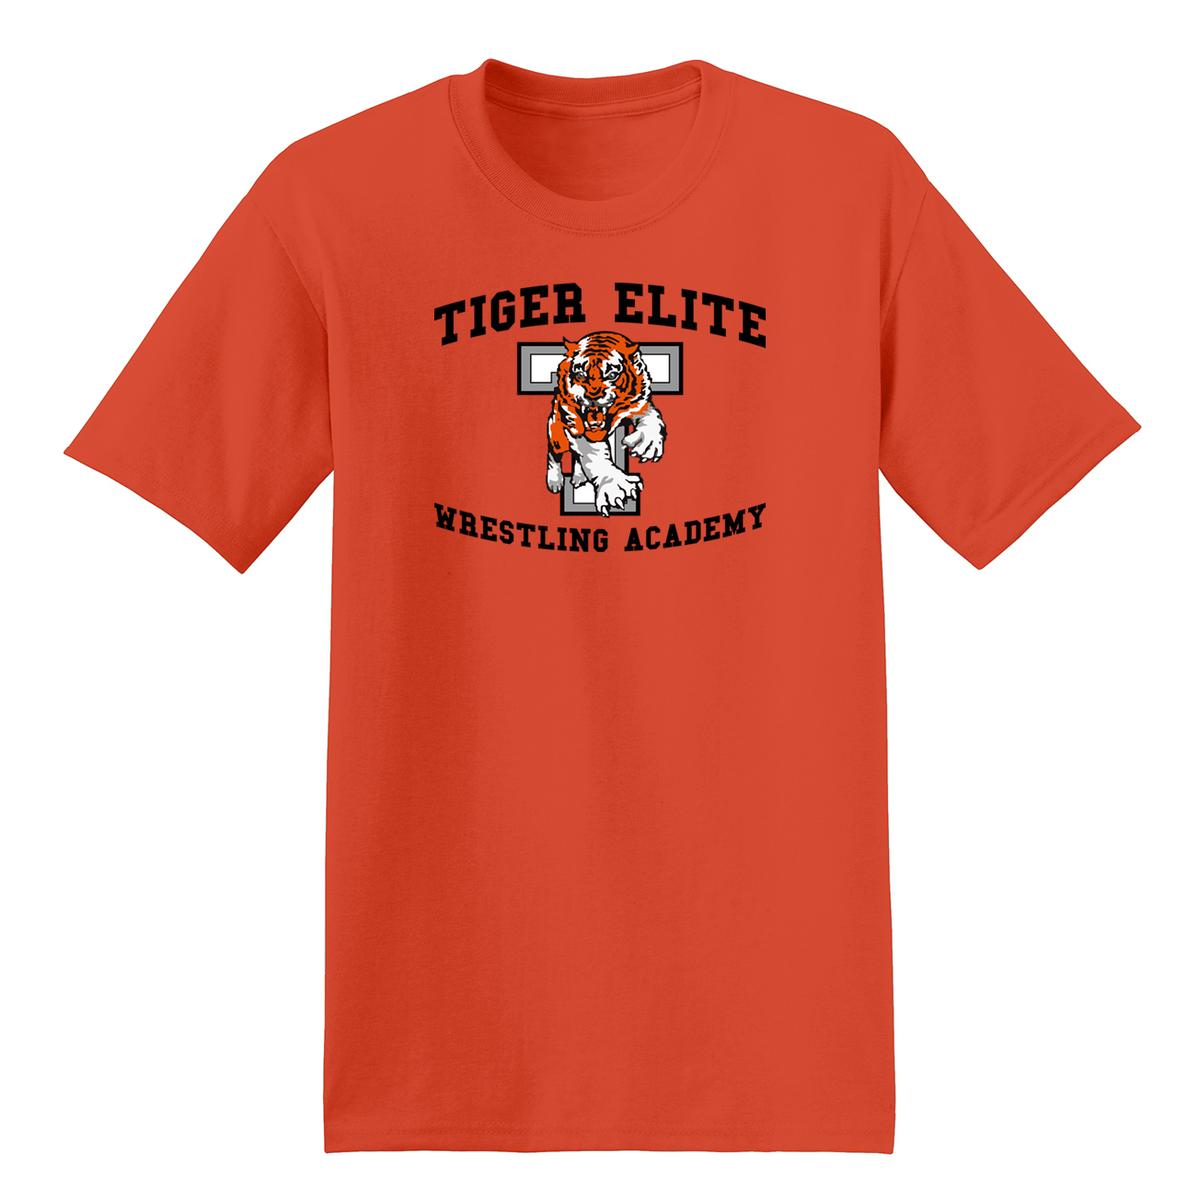 Tiger Elite Wrestling Academy T-Shirt